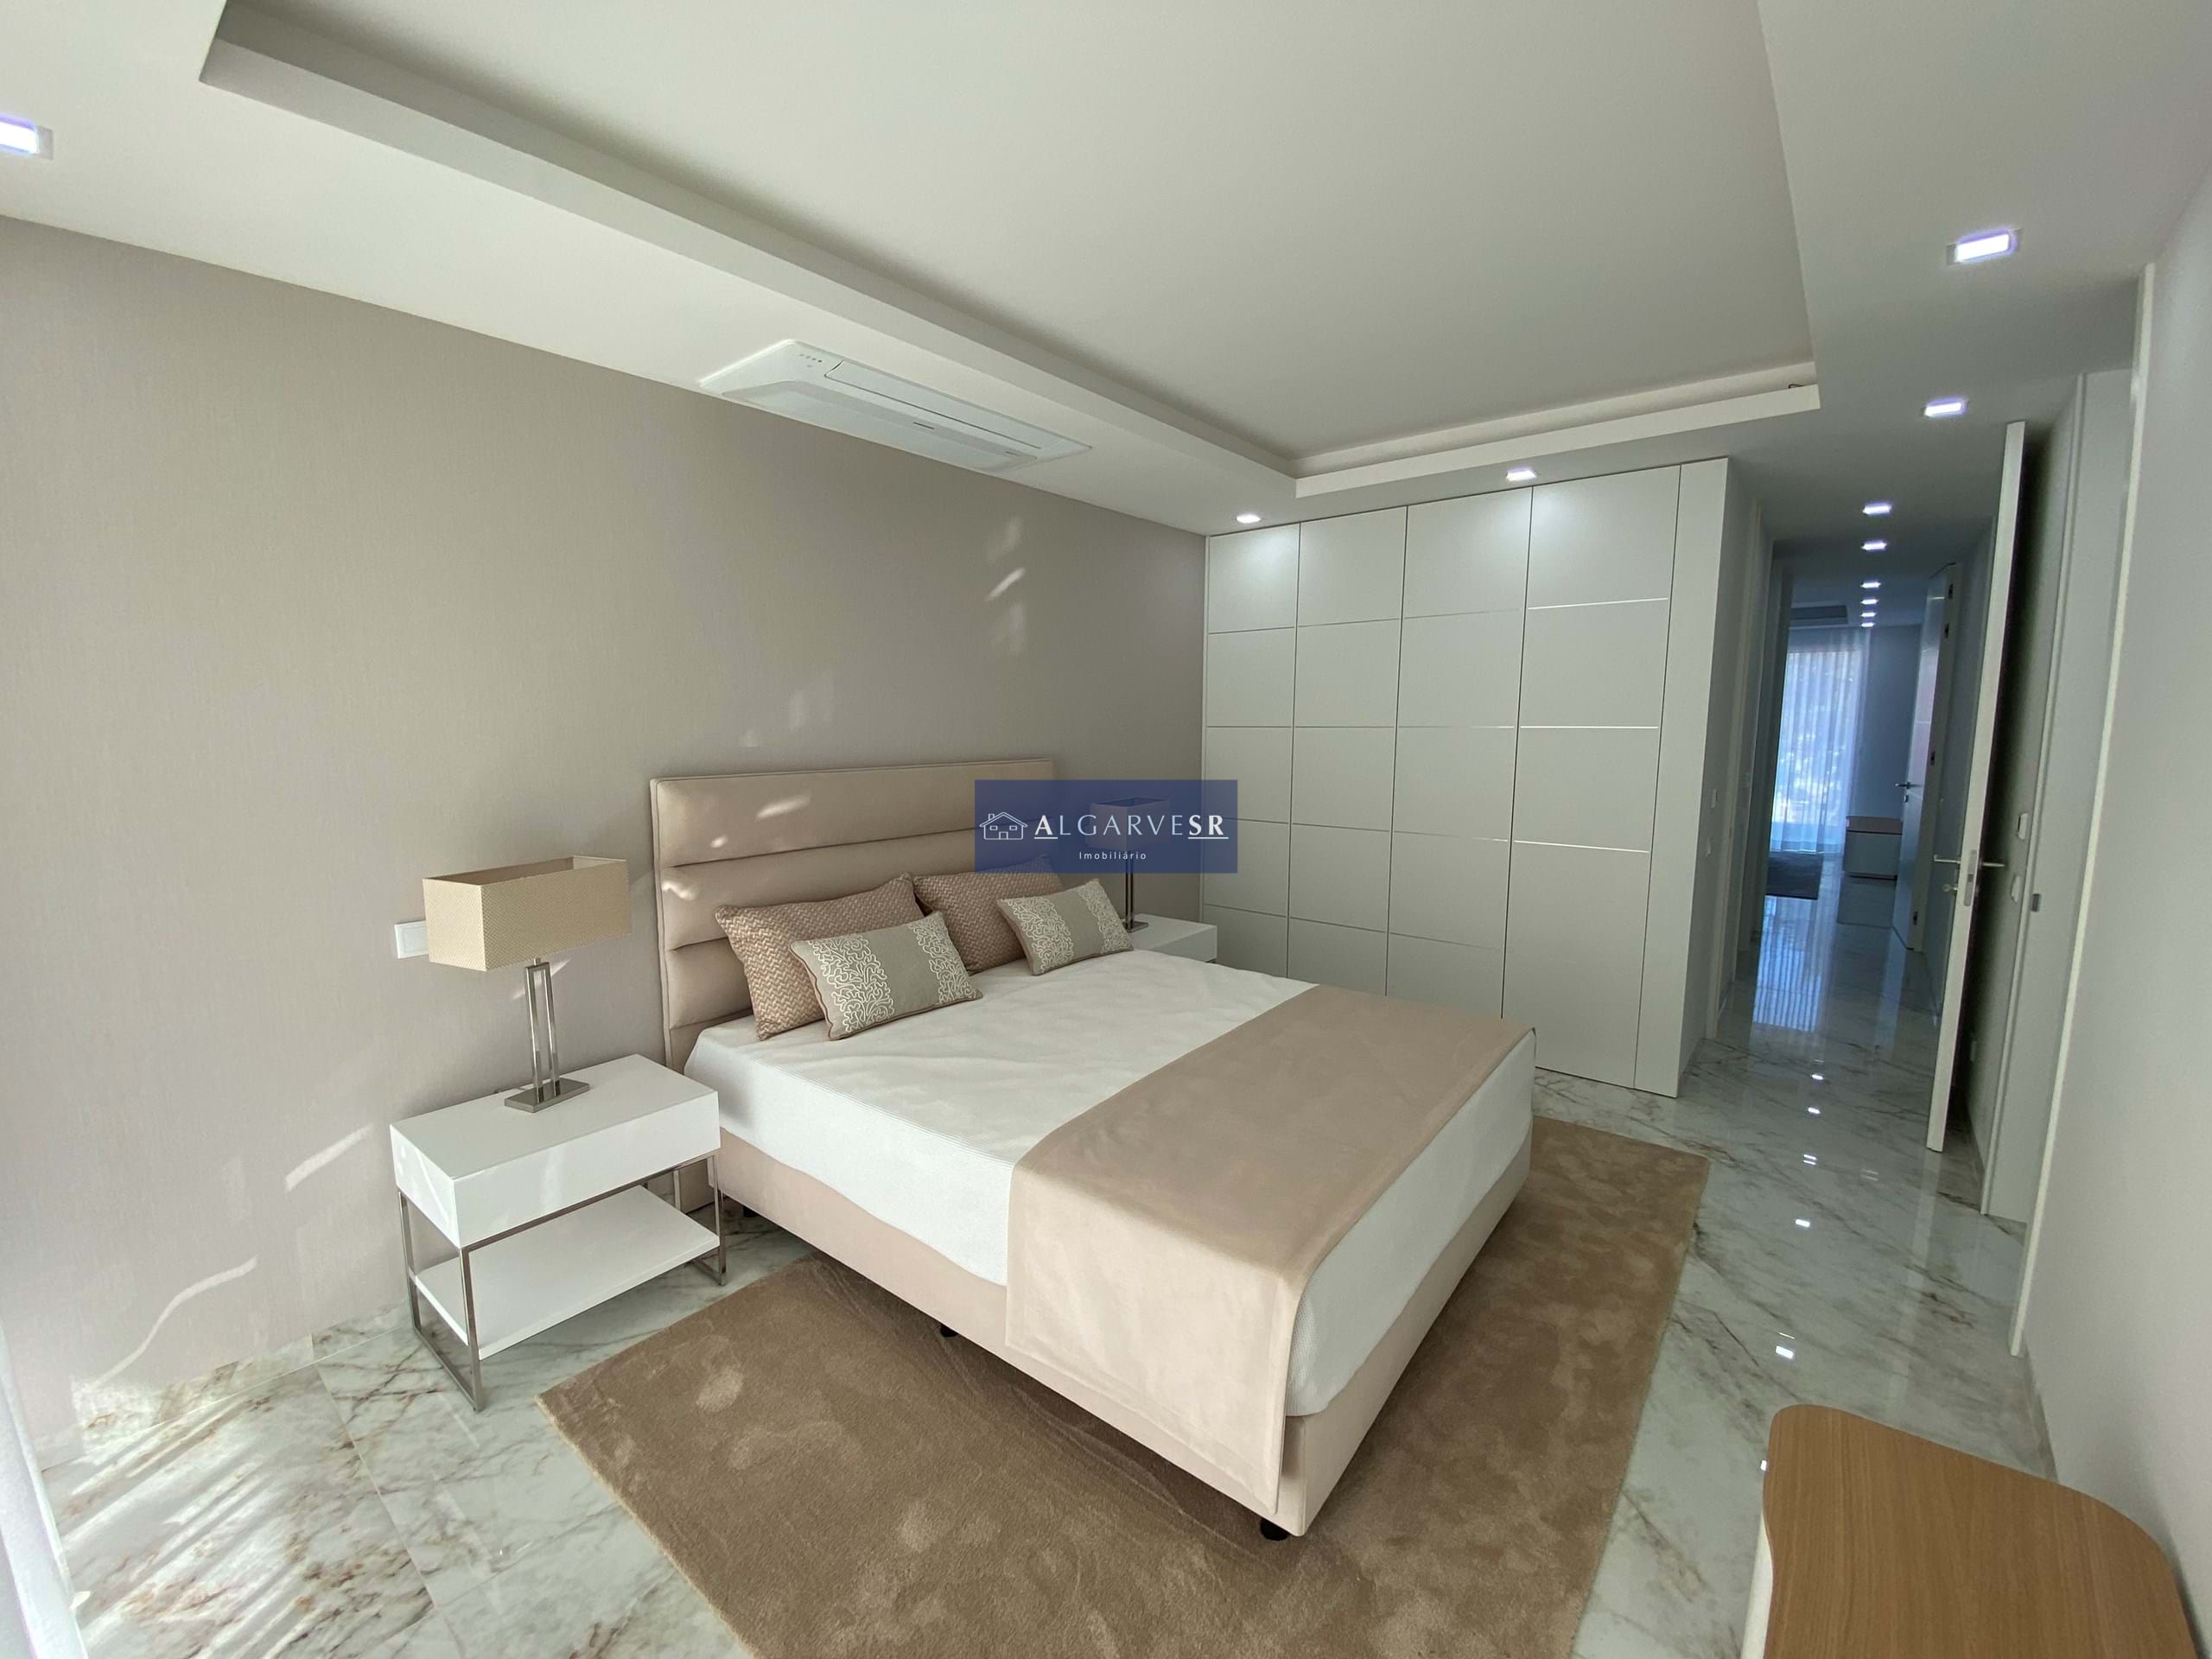 Lagos - Appartement T2 Nouvelle copropriété de luxe avec piscine 